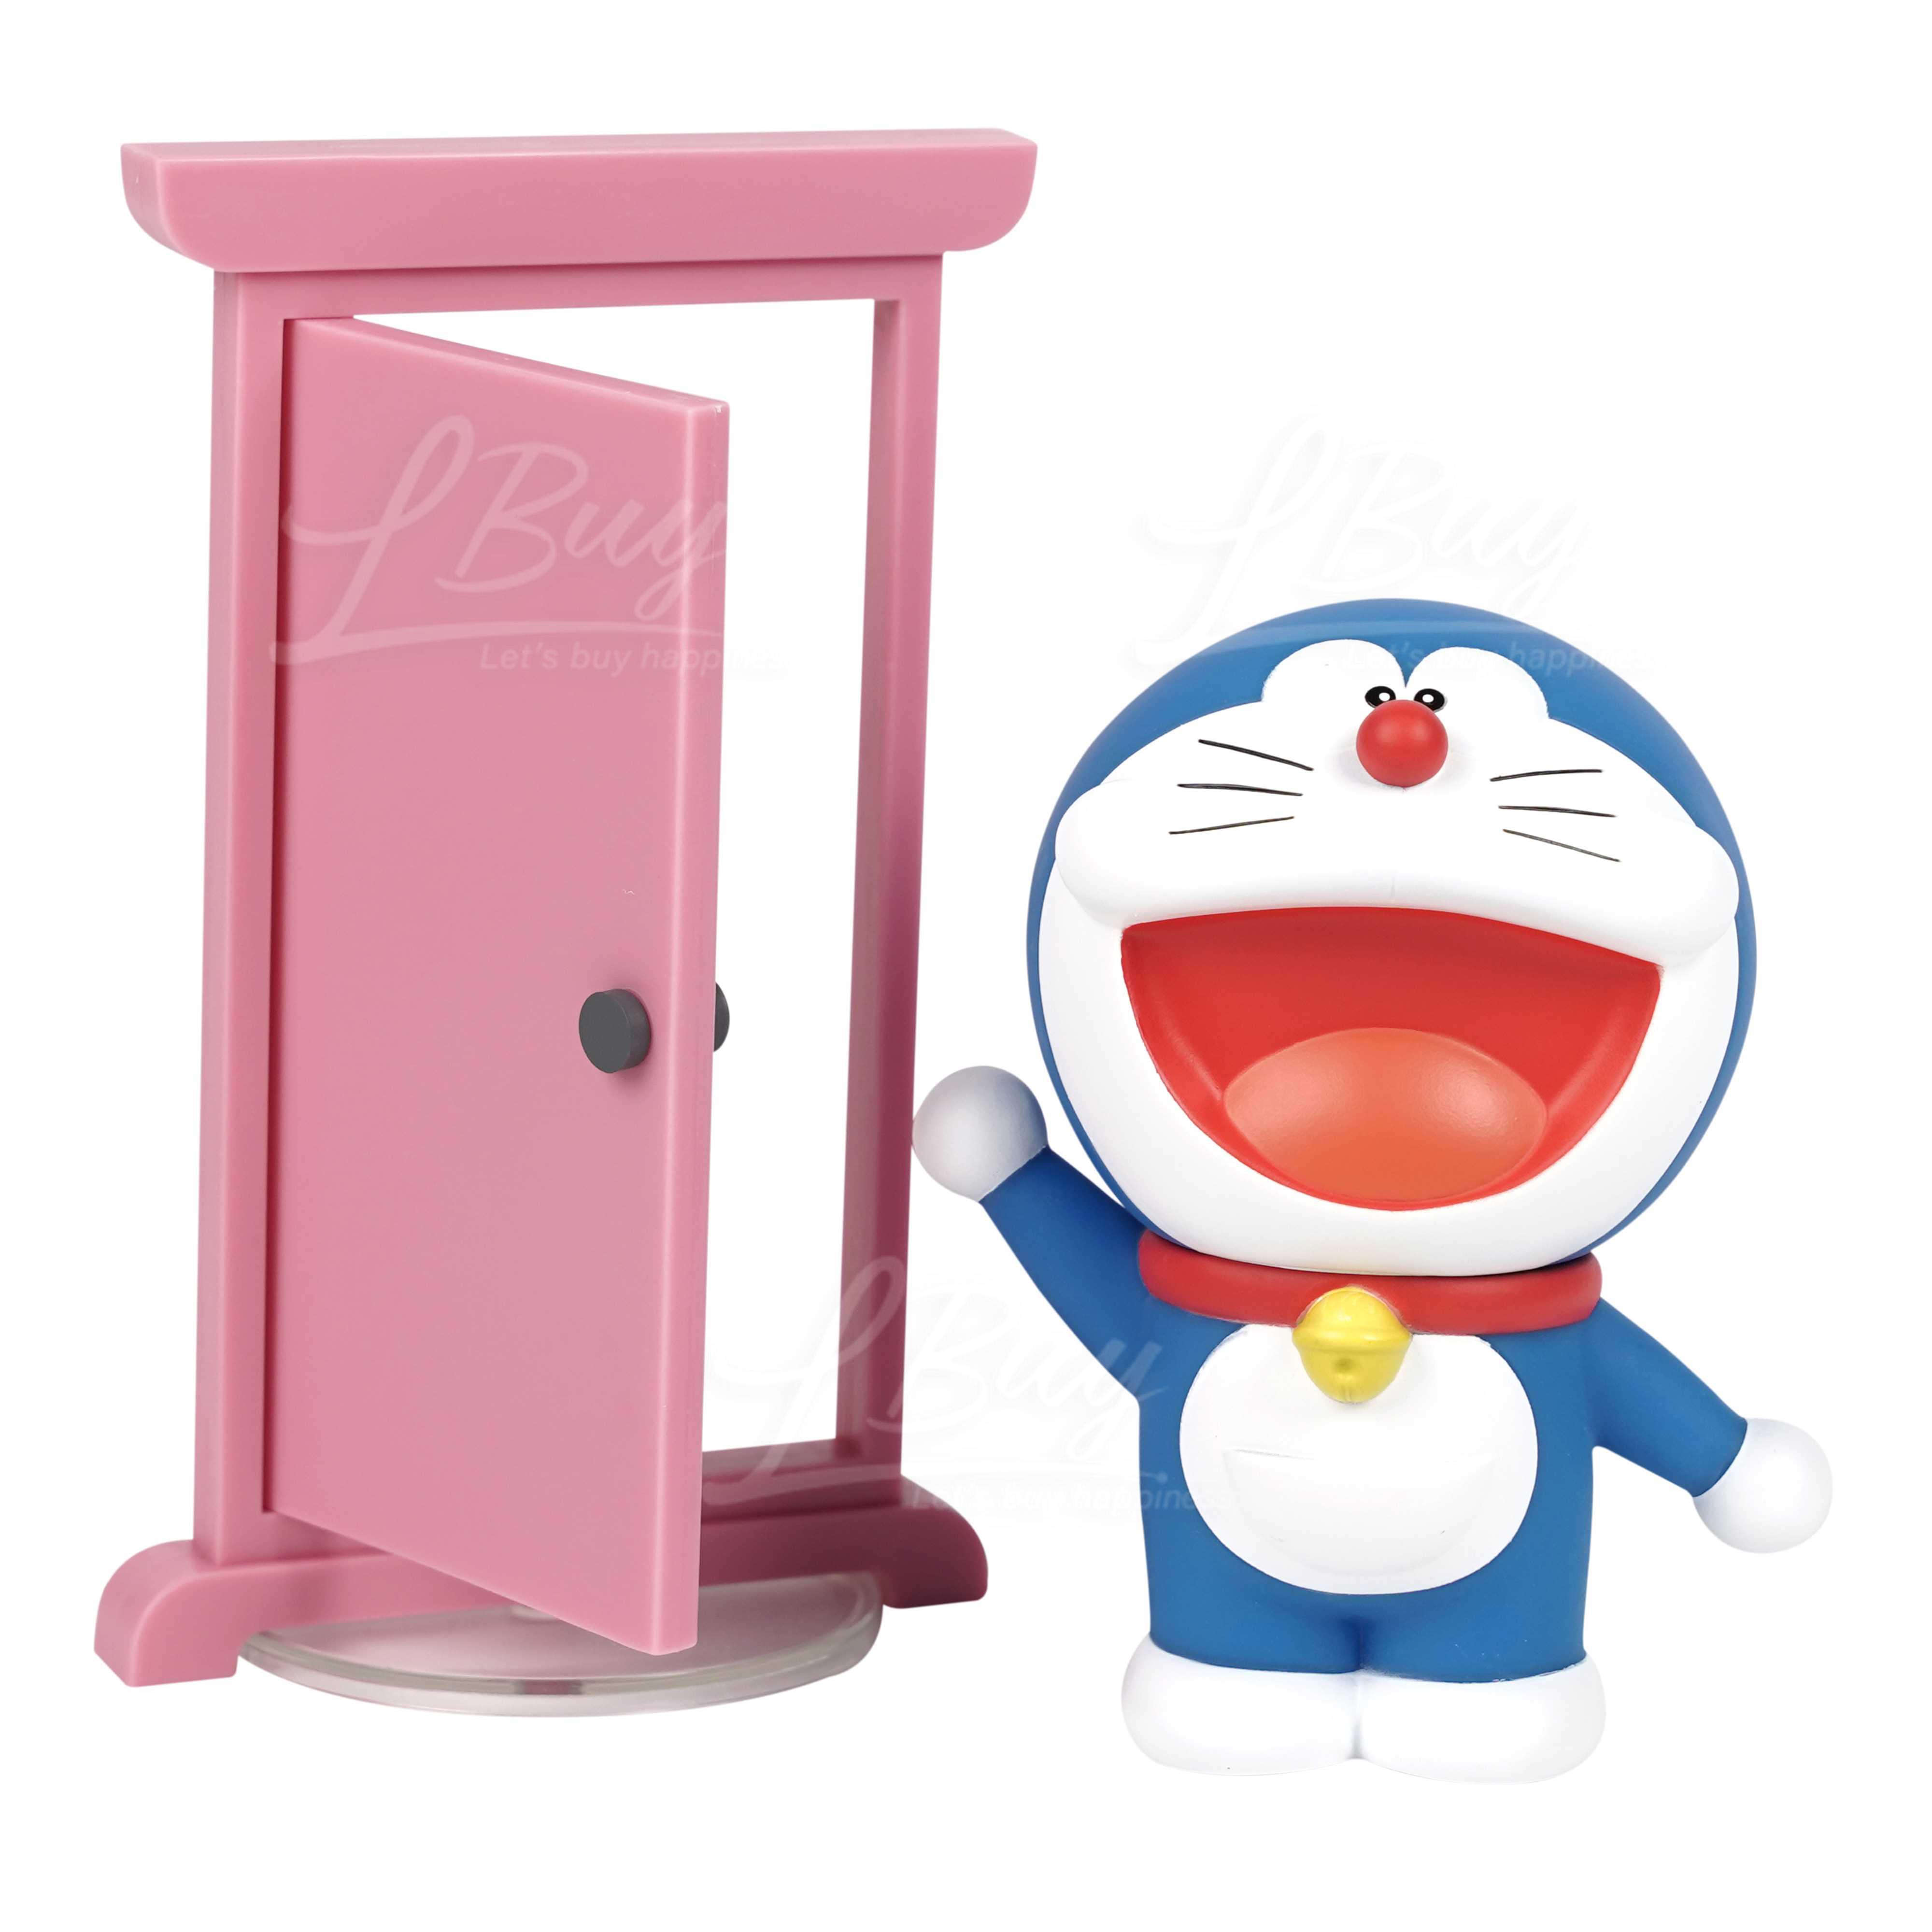 Doraemon anywhere door model 15cm